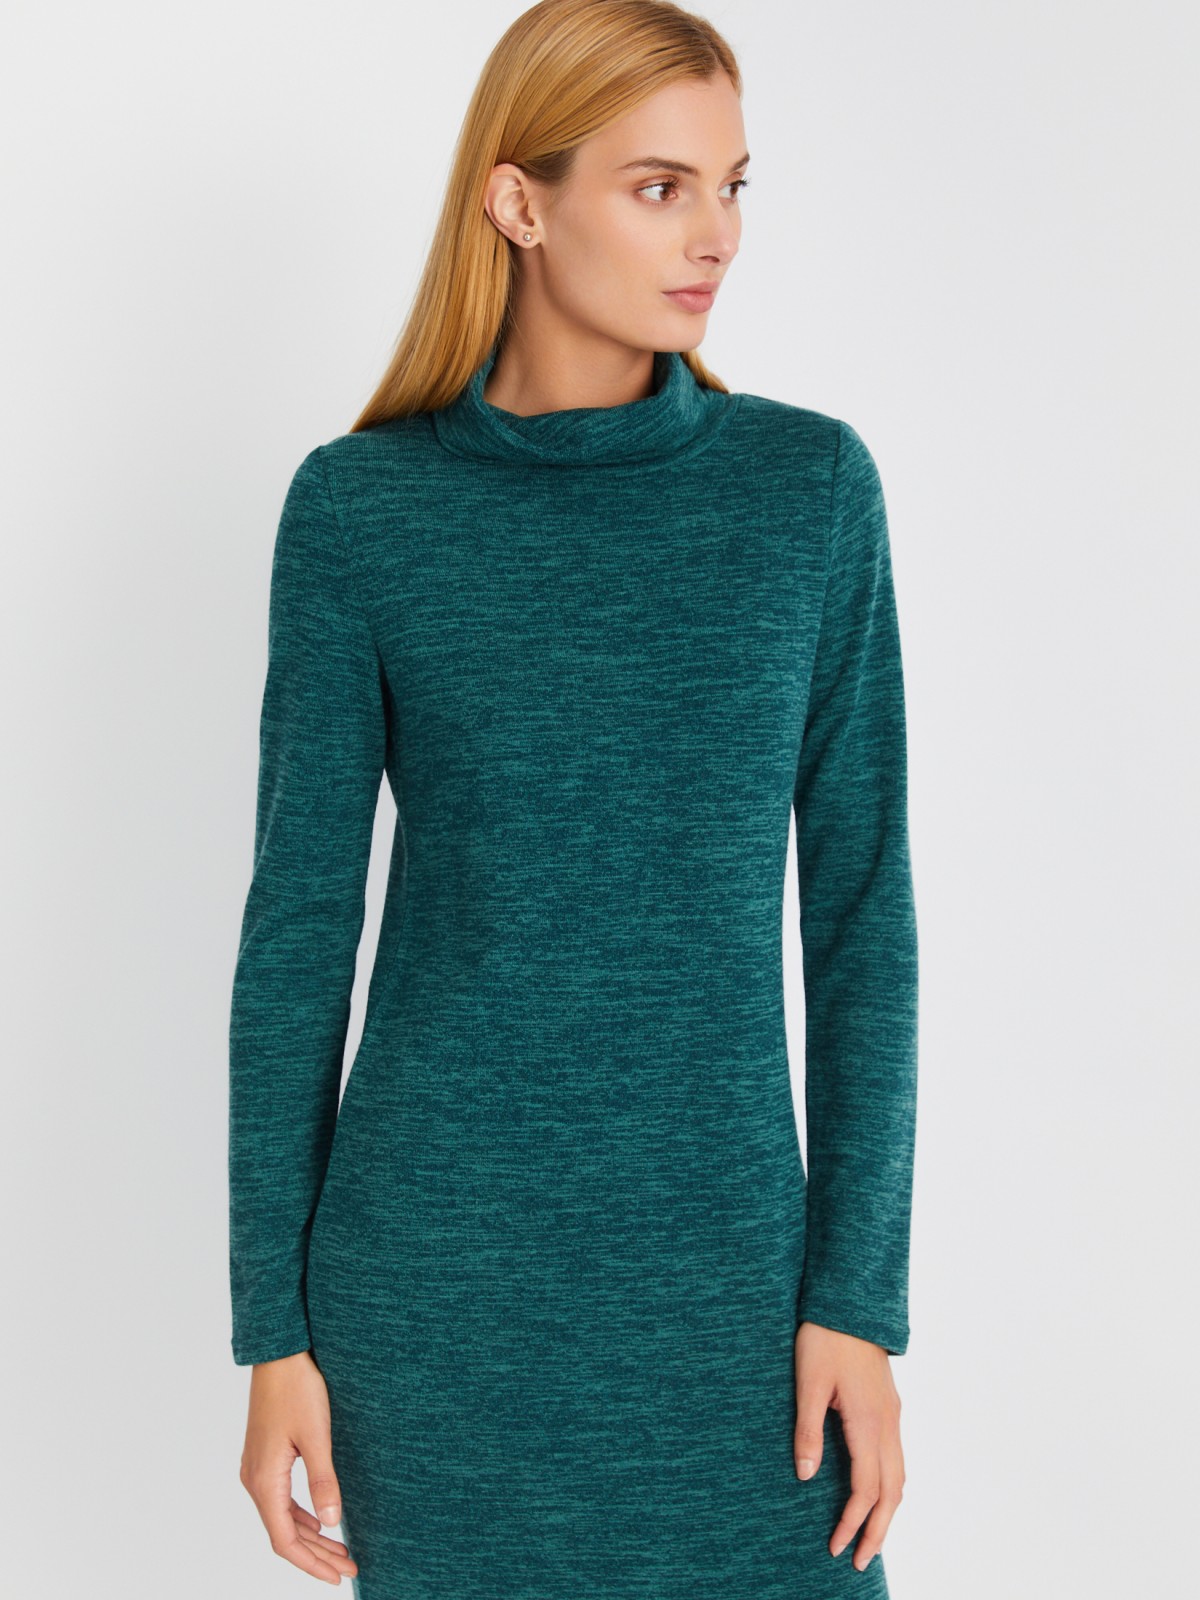 Трикотажное платье-свитер длины миди с высоким горлом zolla 02334819F062, цвет мятный, размер XS - фото 4